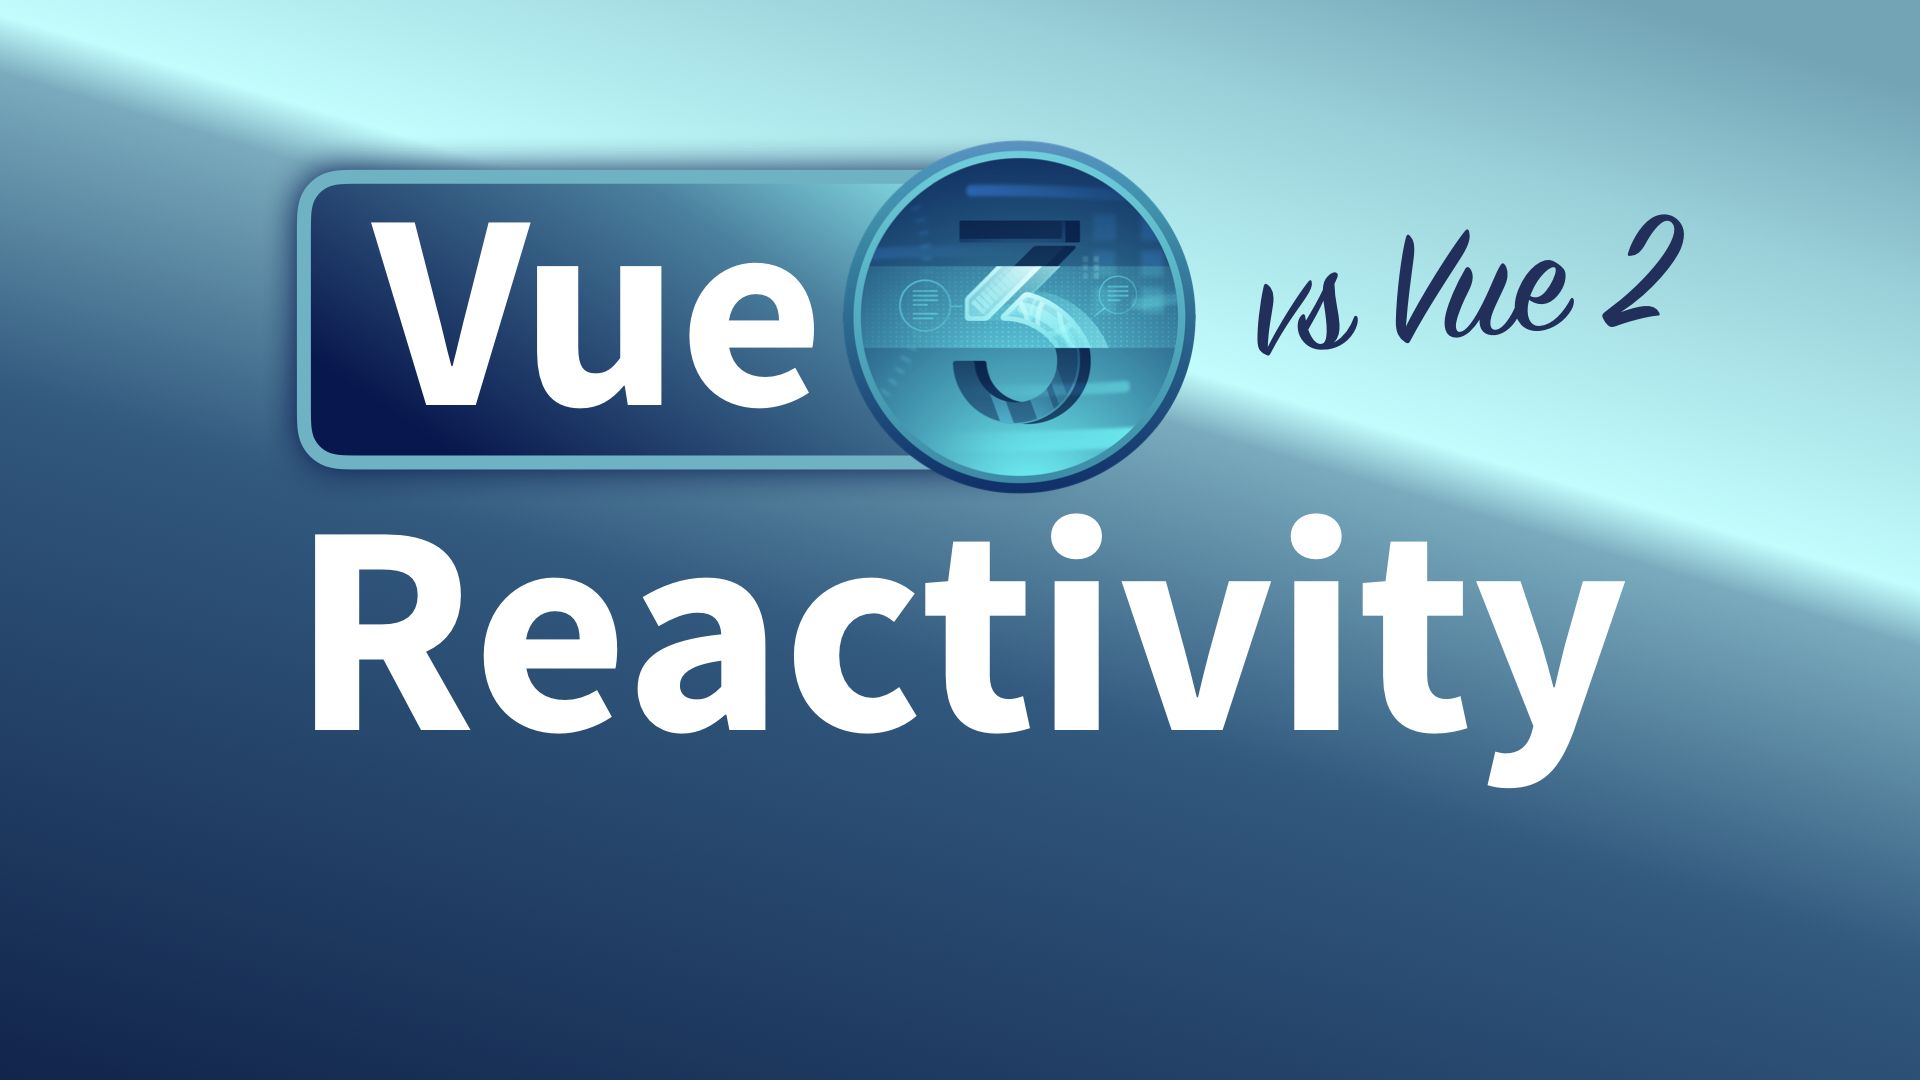 Reactivity: Vue 2 vs Vue 3